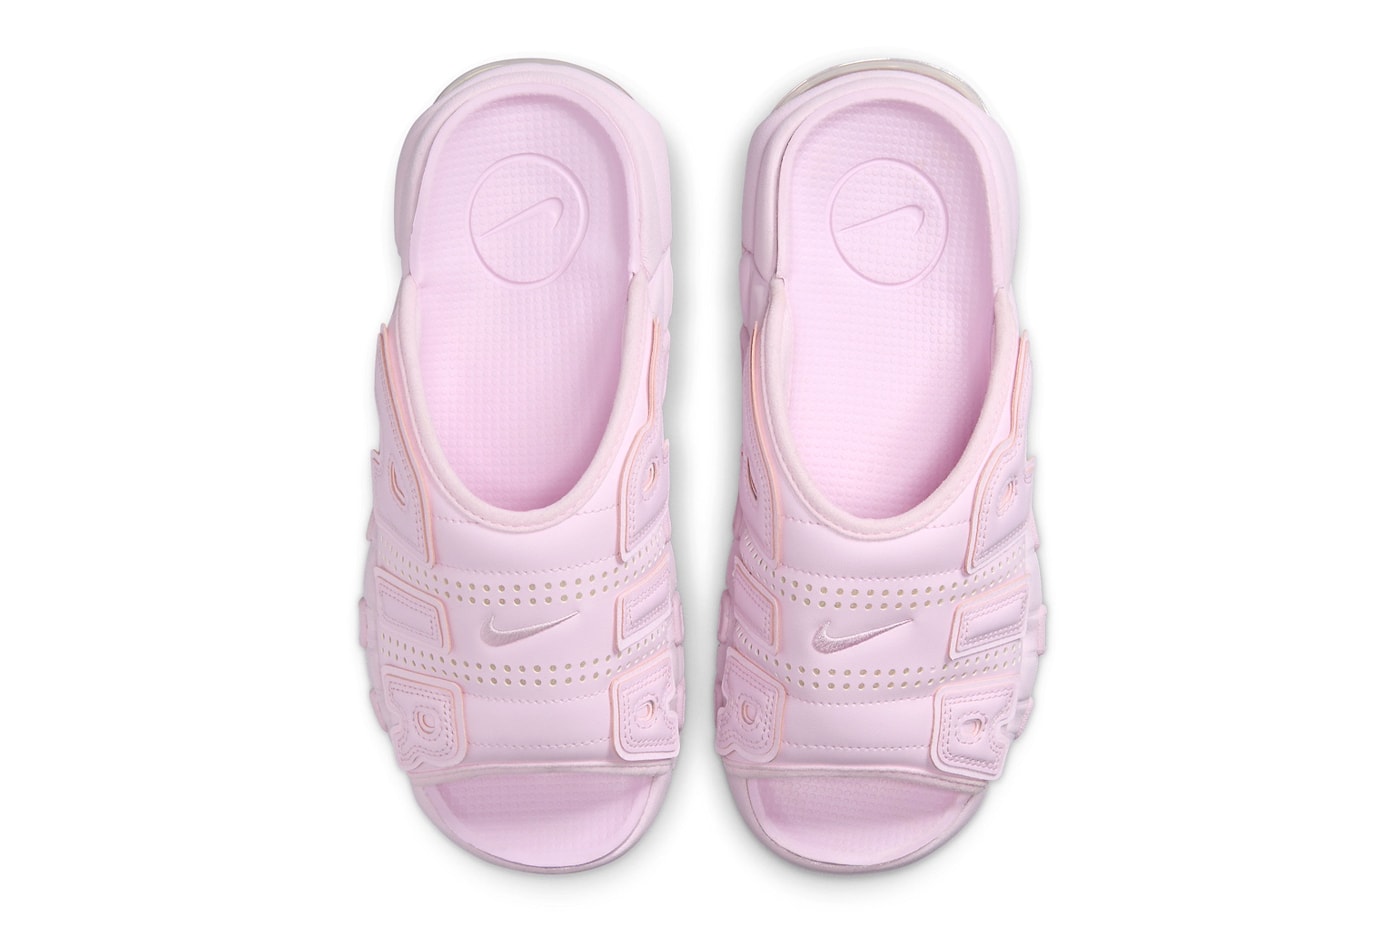 ナイキから桜の花びらを彷彿とさせるエアモアアップテンポスライド “ピンクフォーム”が登場 Nike Air More Uptempo Slide Arrives in "Pink" FJ2597-600 sandals ambushretro mx calm slides 